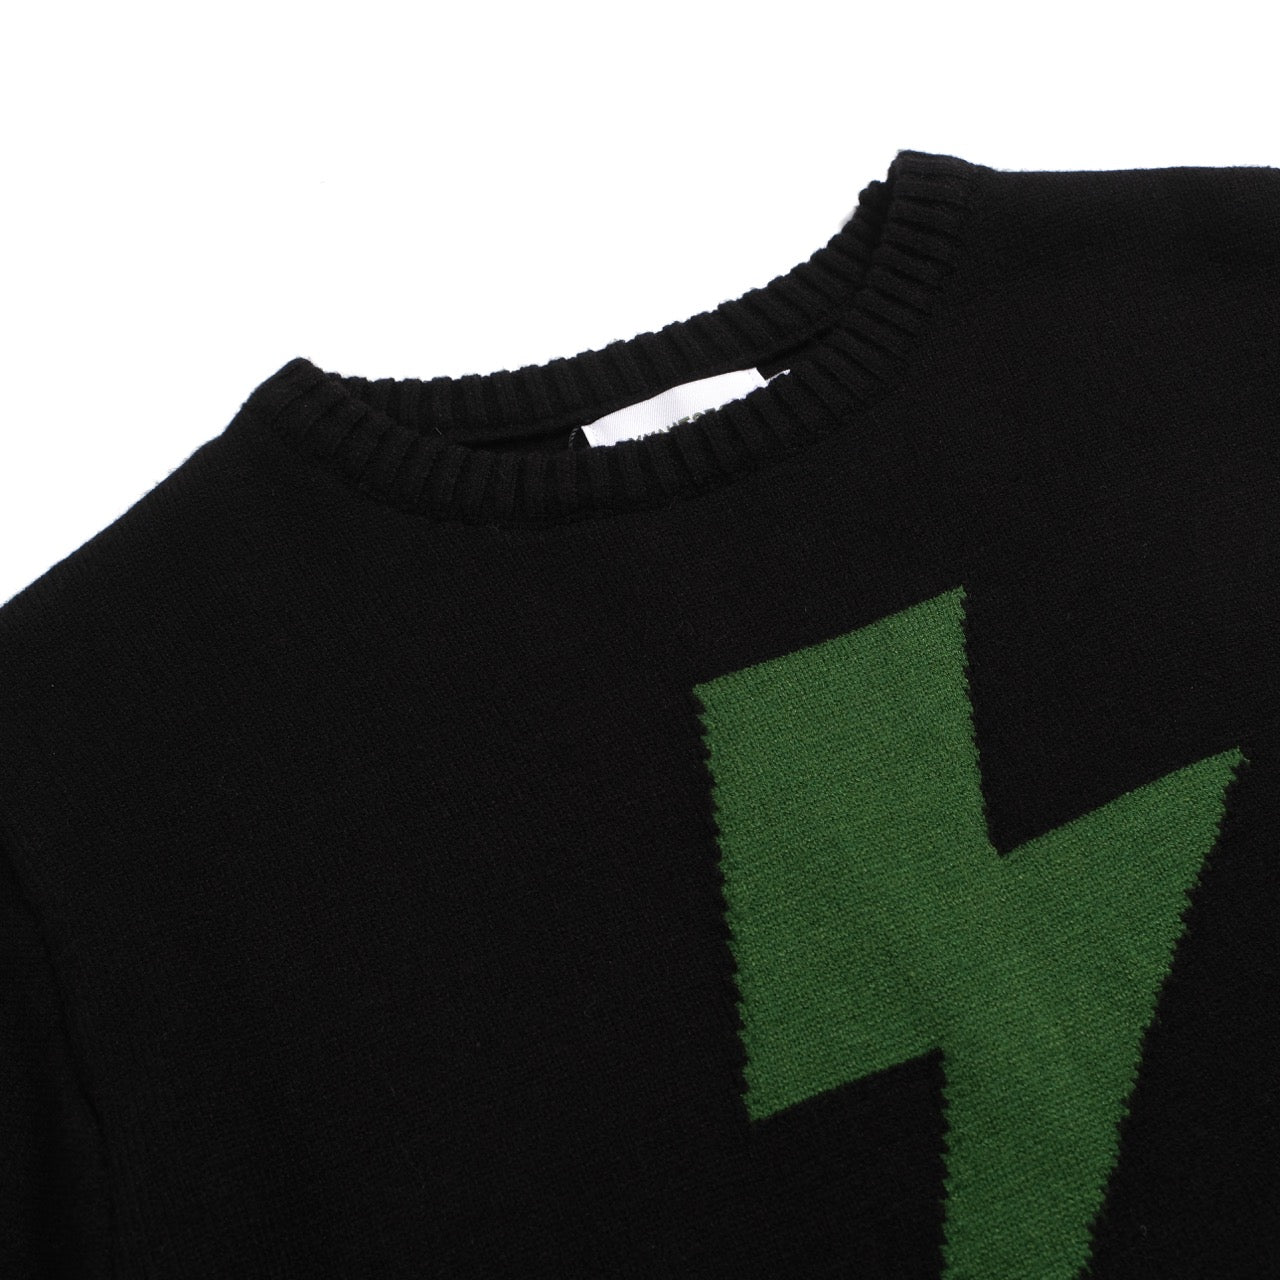 Men's Green Lightning Print Knitted Black Sweater